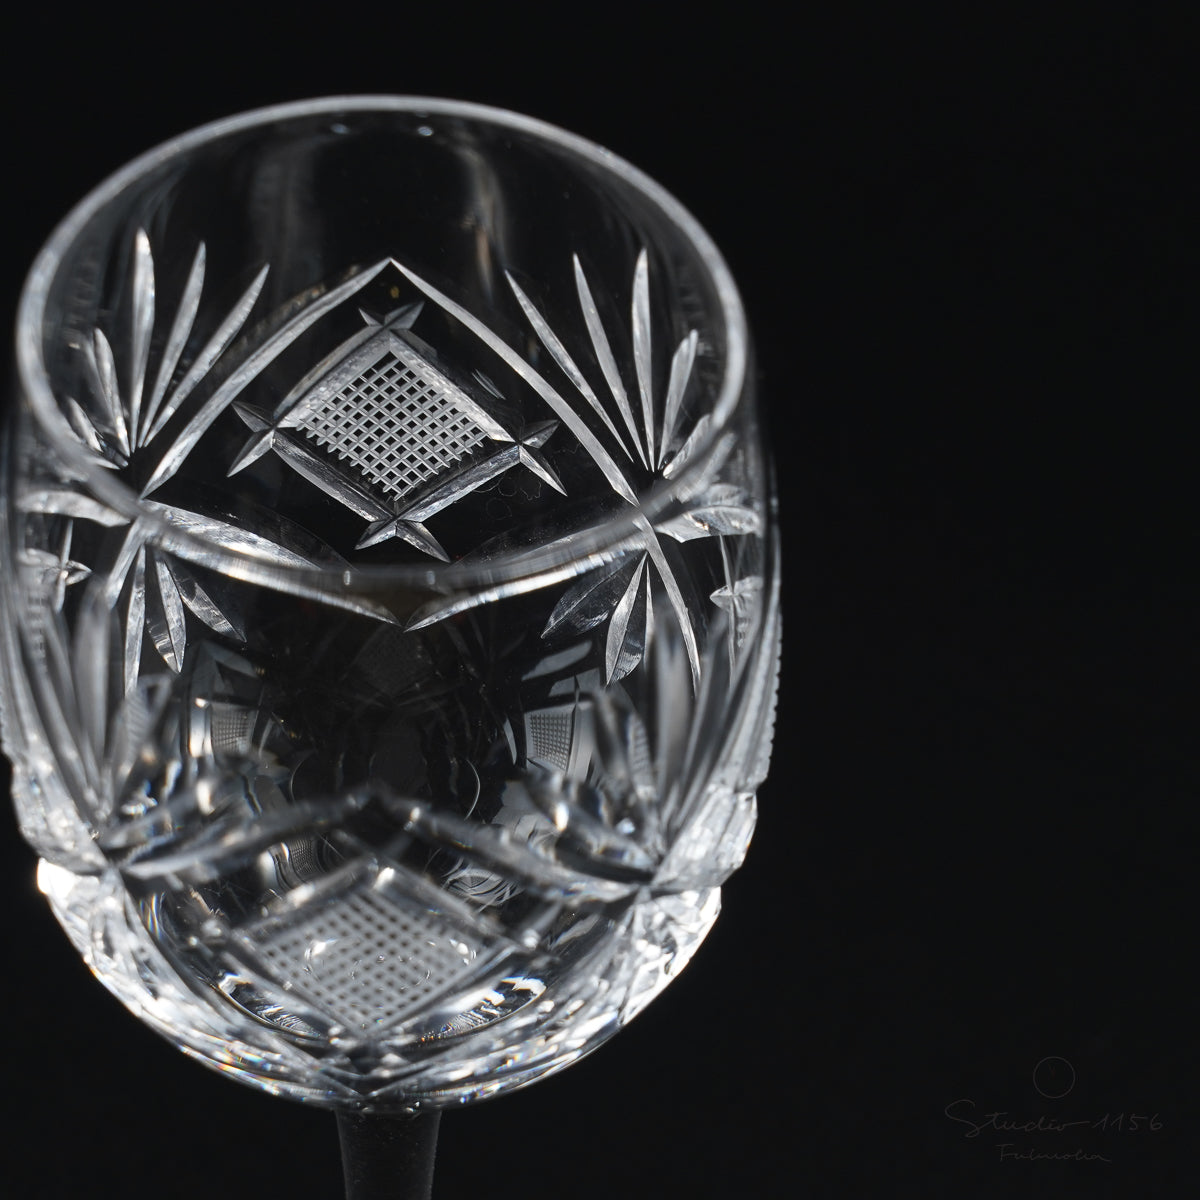 ガラス食器 セミクリスタル 切子ハンドカット 飛鳥 ワイングラス 150ml [廃番特価品] Yoshinuma-glass Studio1156